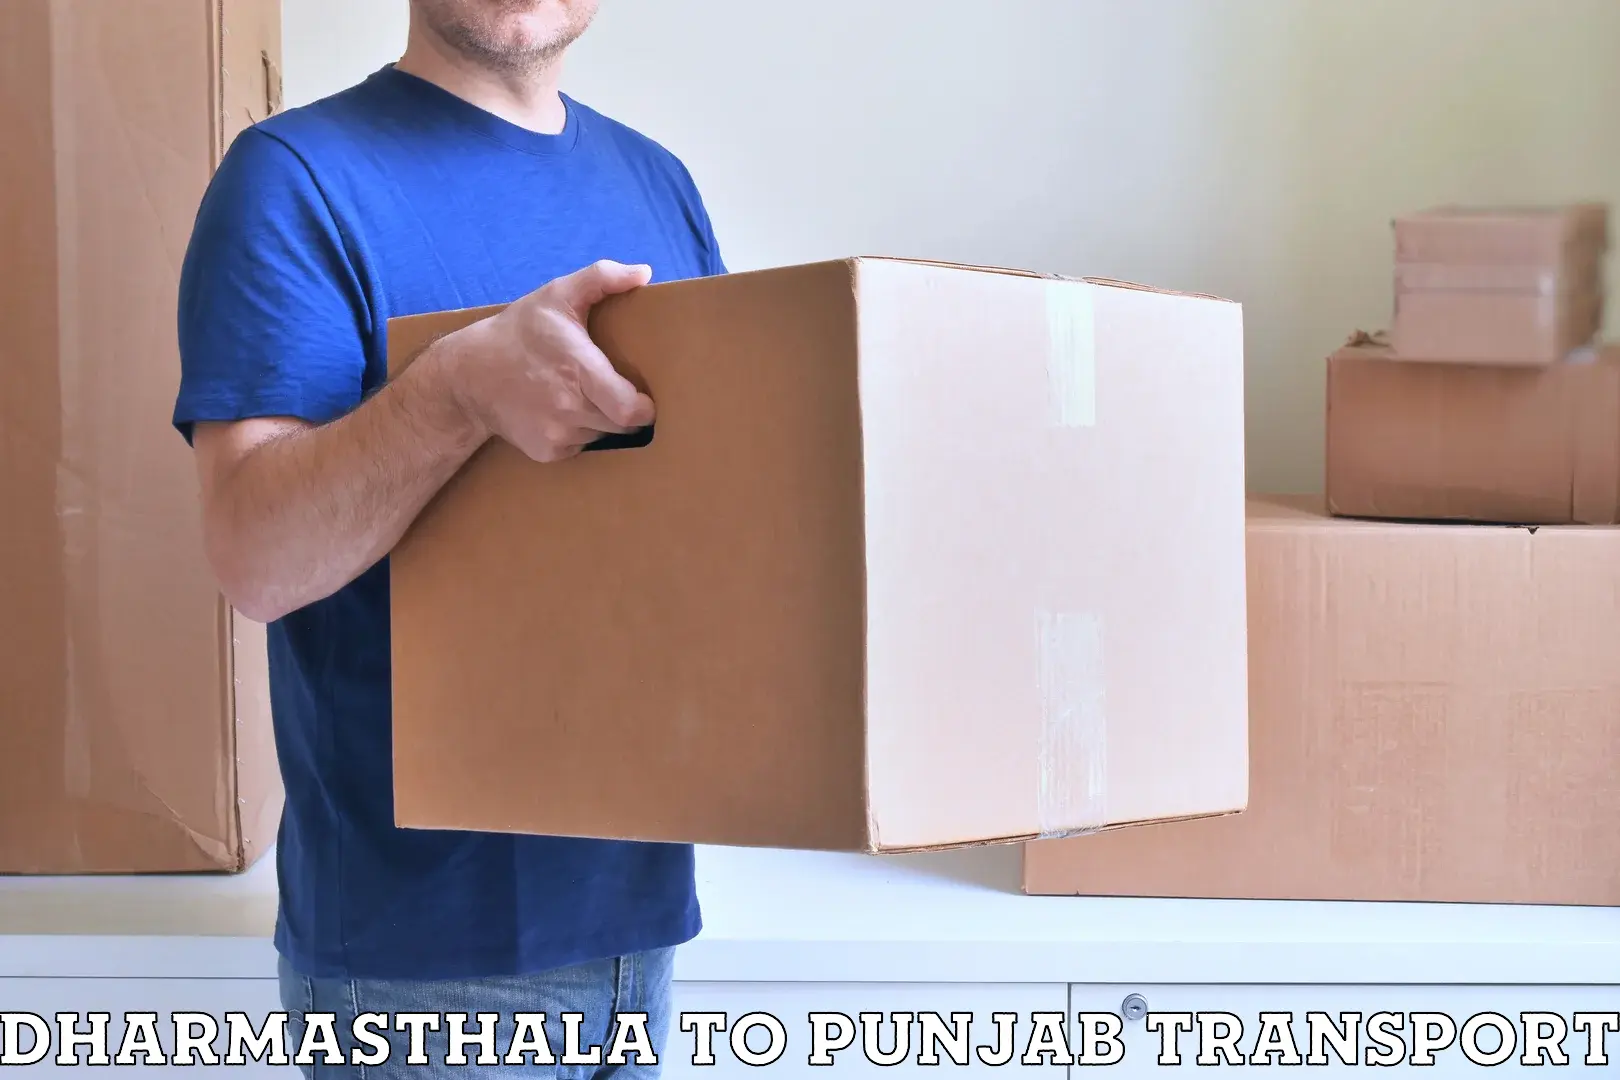 Furniture transport service Dharmasthala to Kapurthala